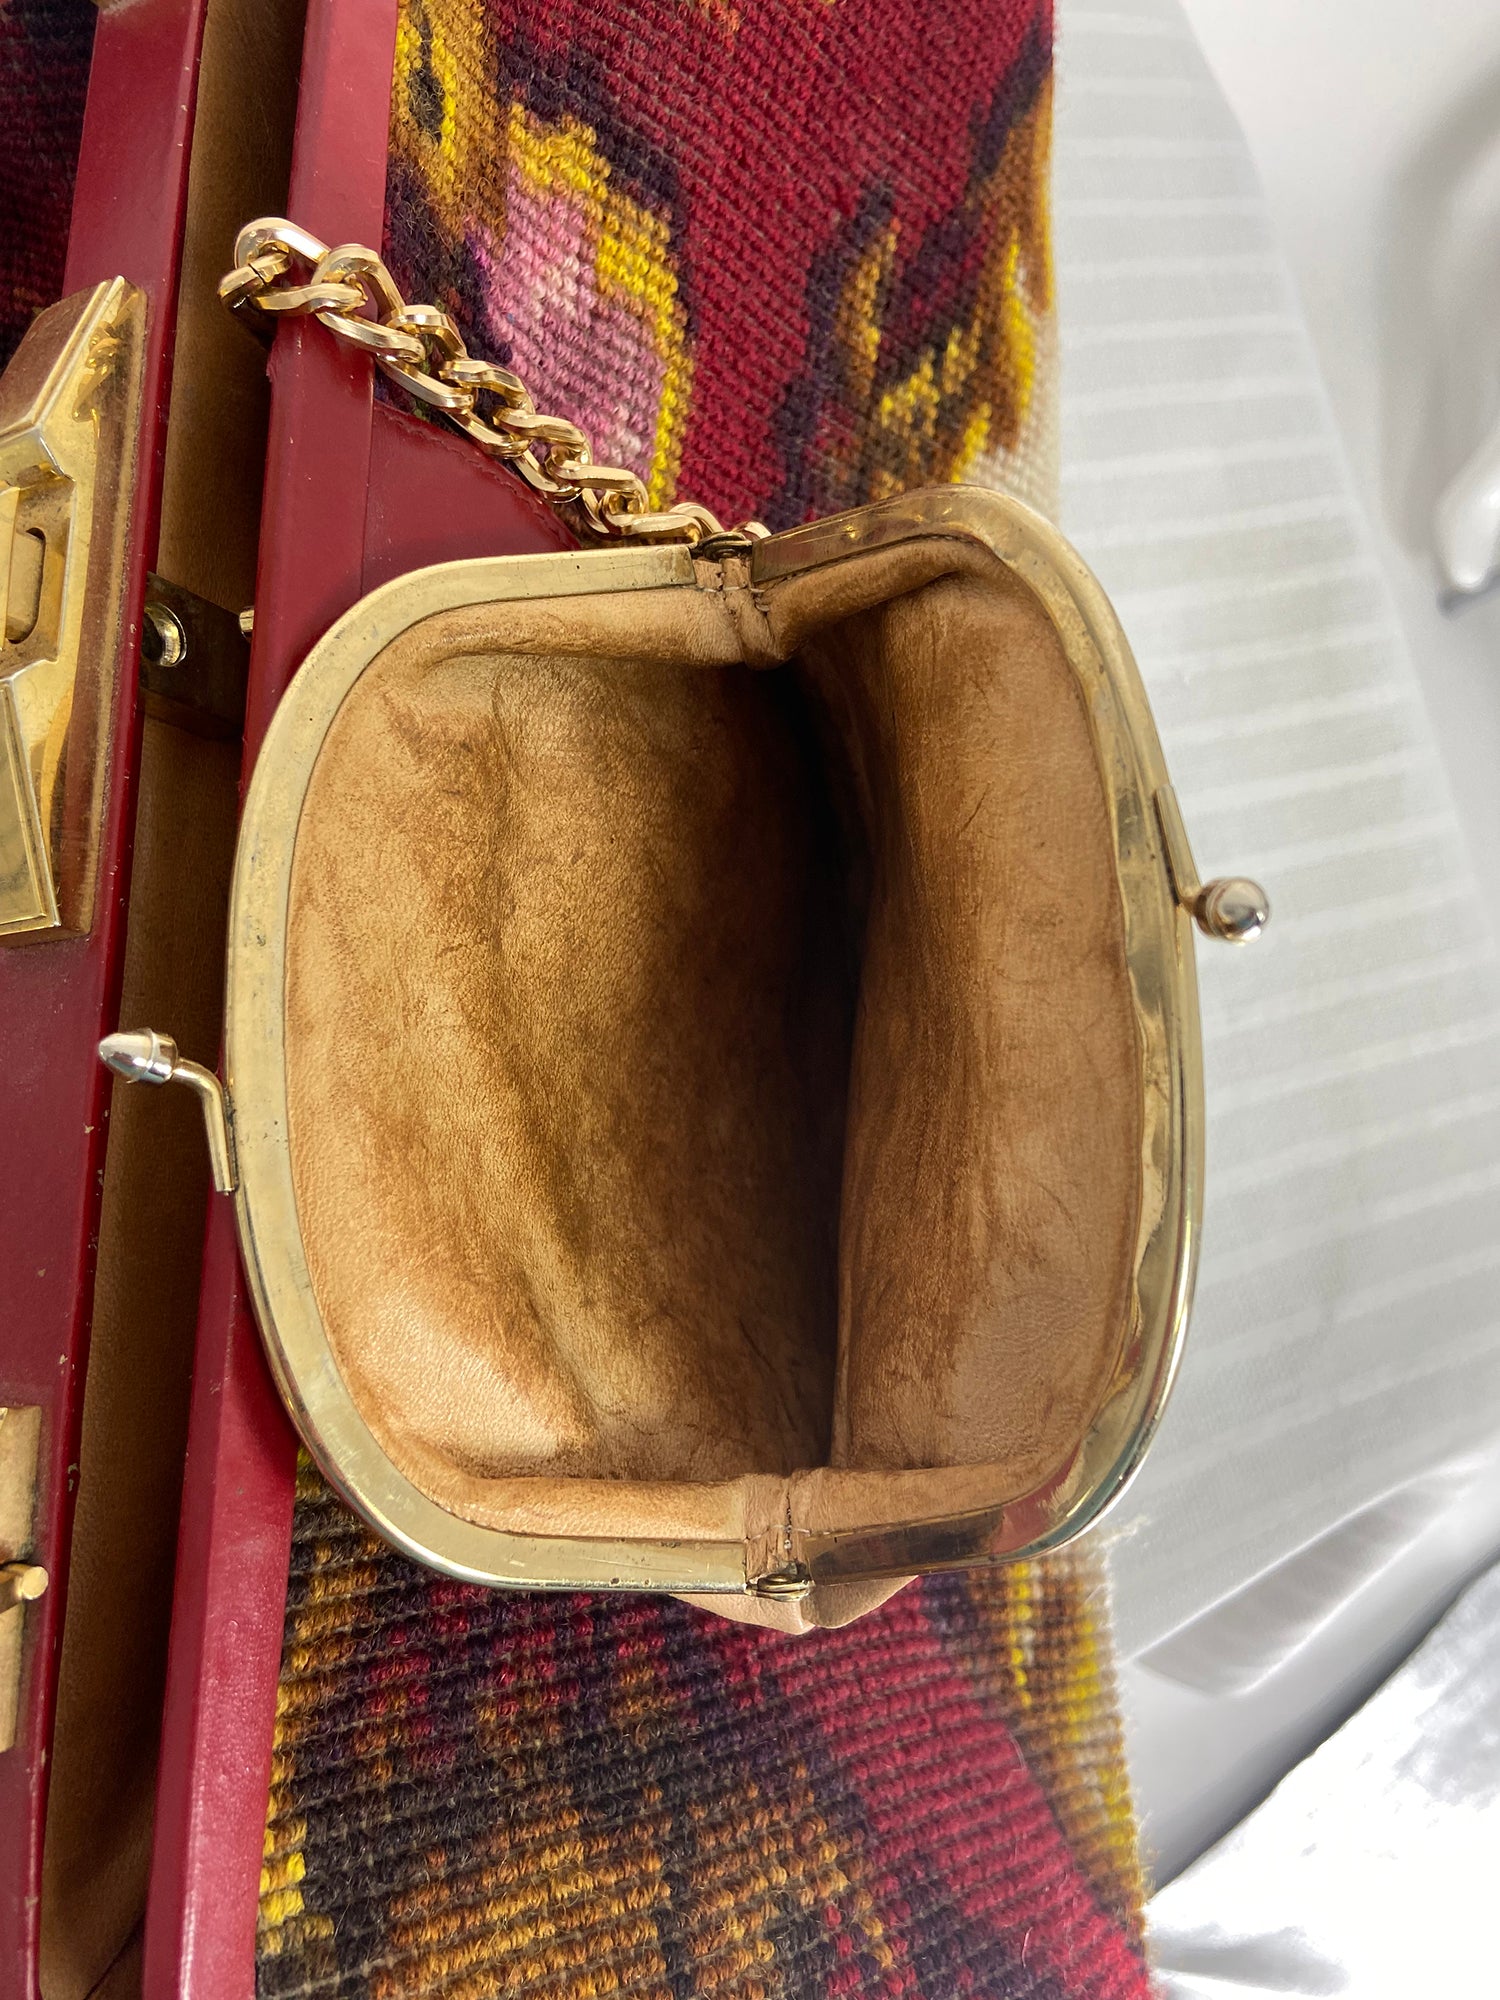 Koret Roses Frame Carpet Bag Rare 1960s Leather Interior Handbag